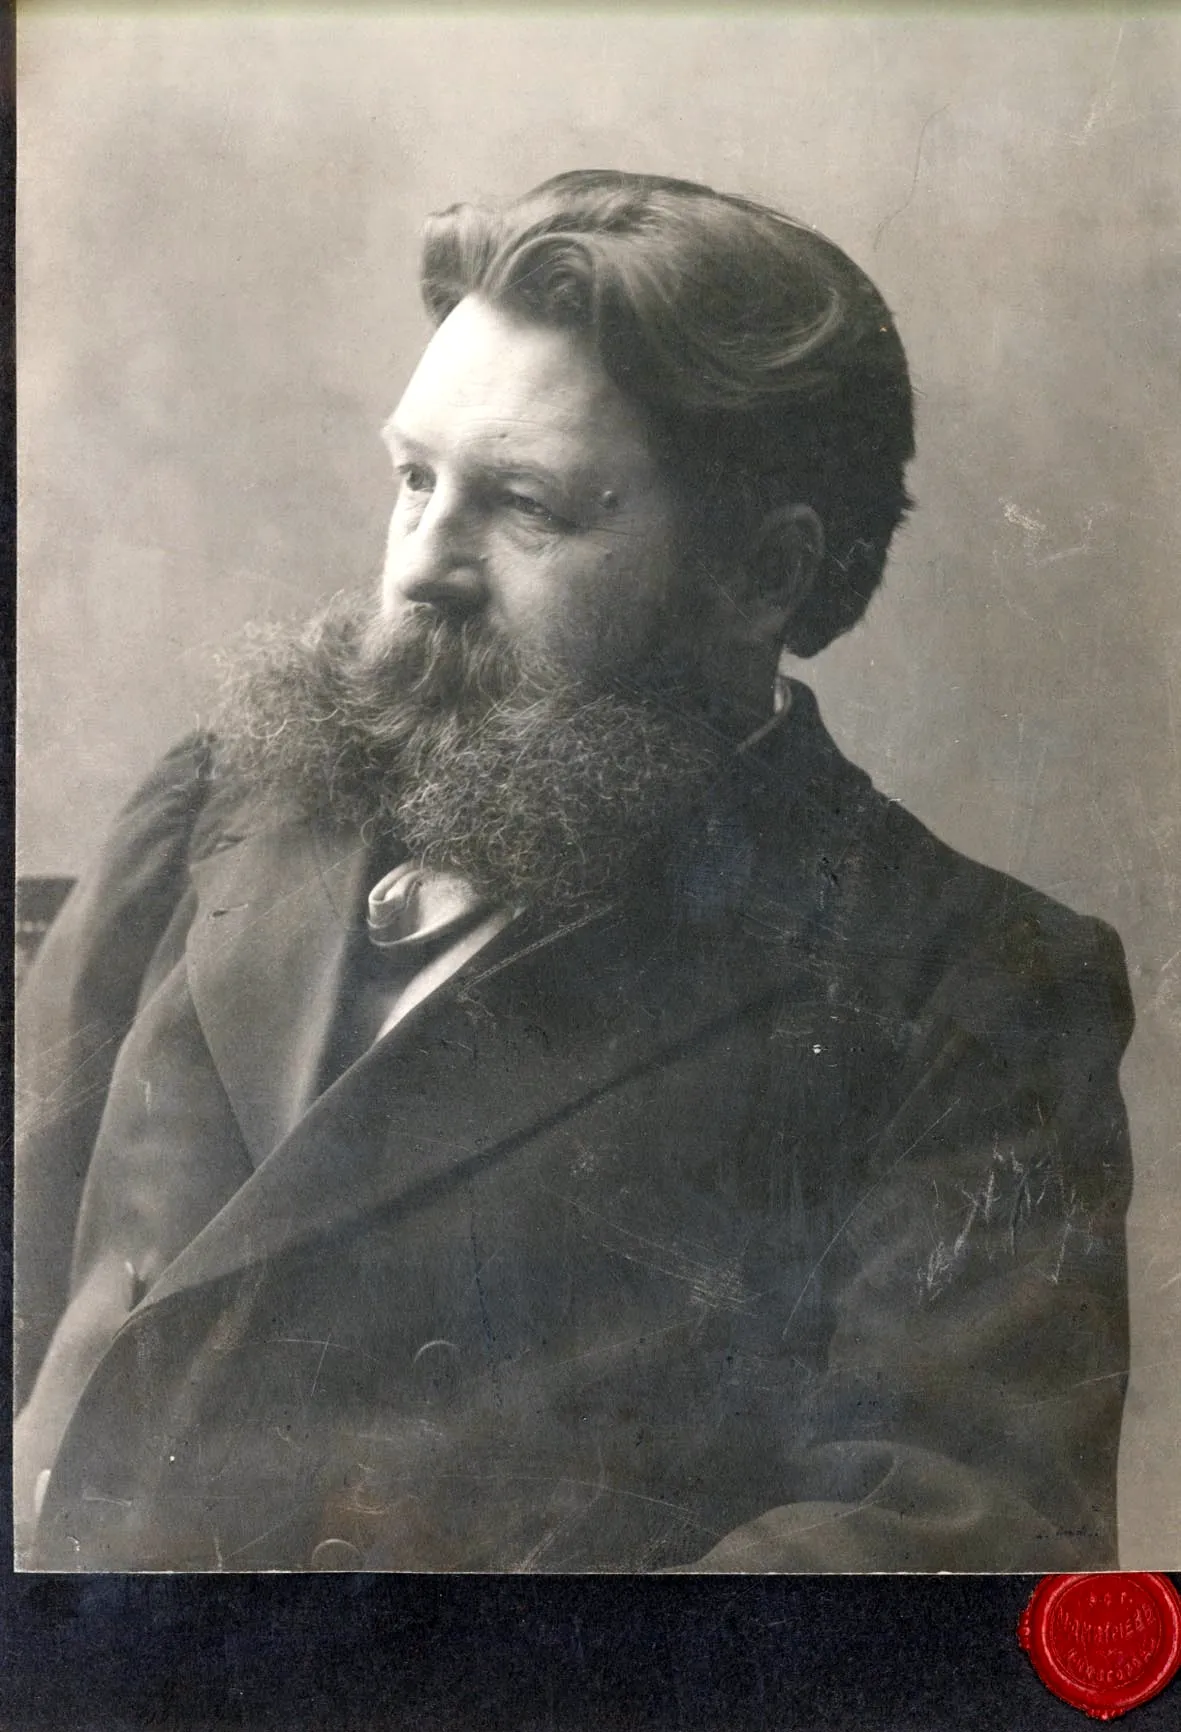 Дмитриев Максим Петрович (1858-1948)